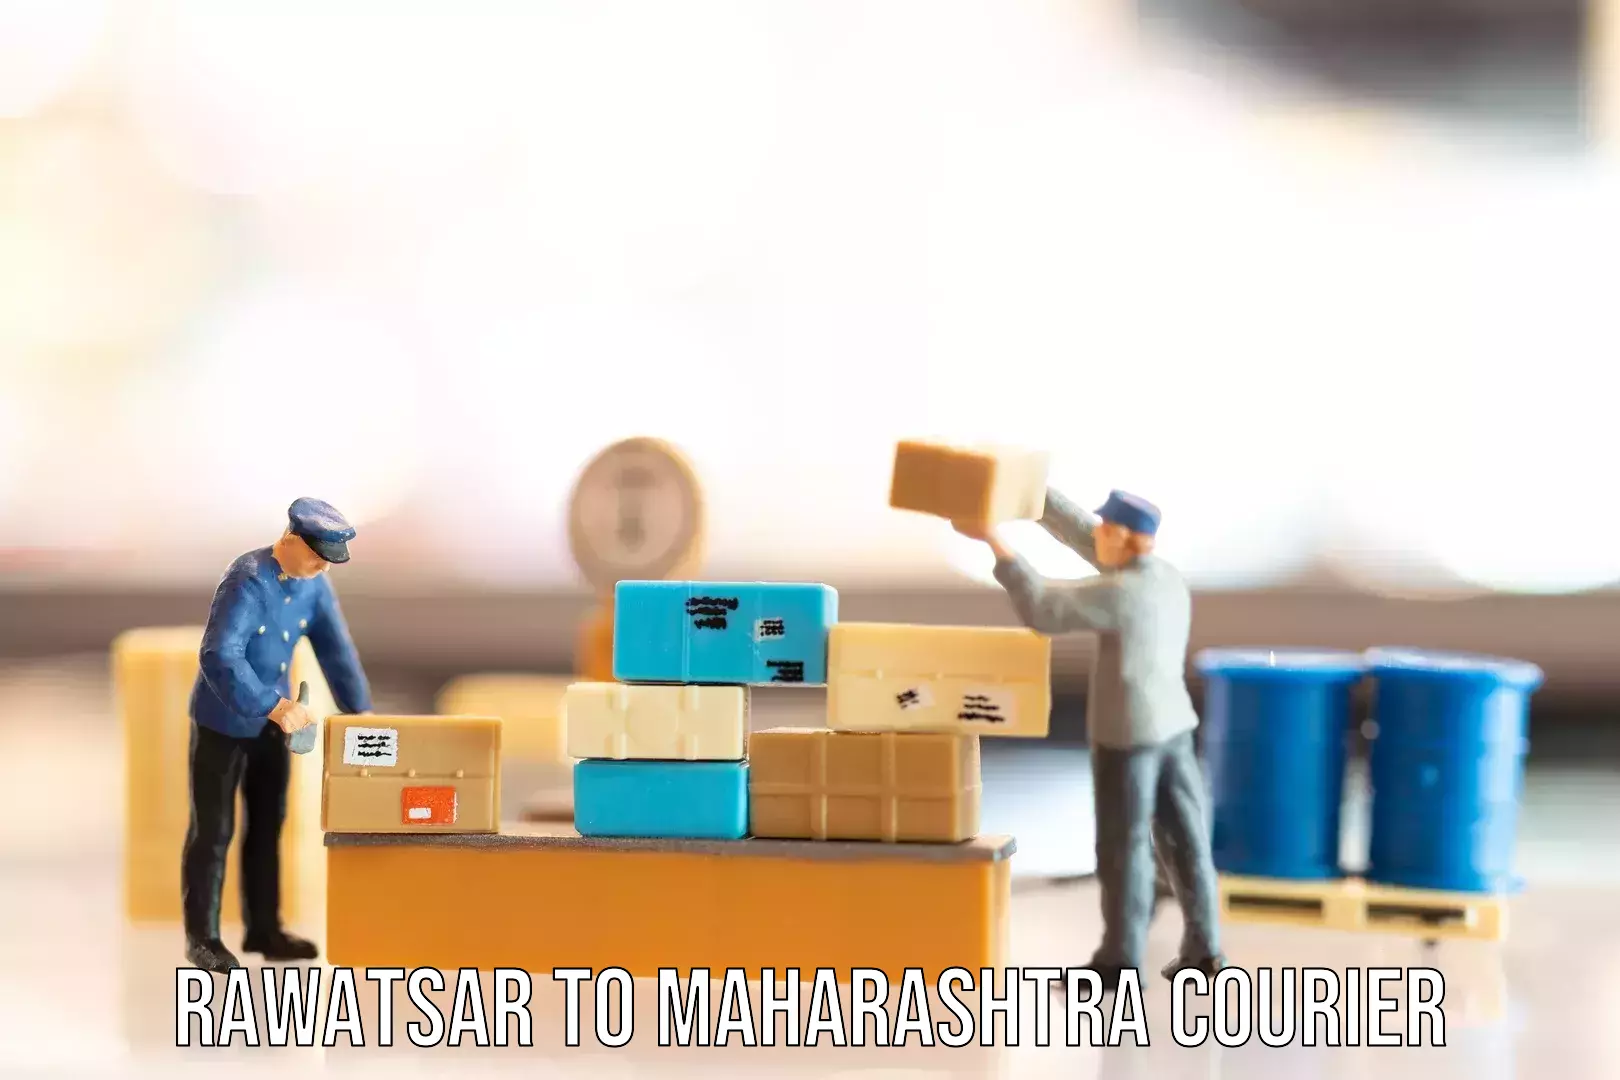 Baggage shipping service Rawatsar to Maharashtra